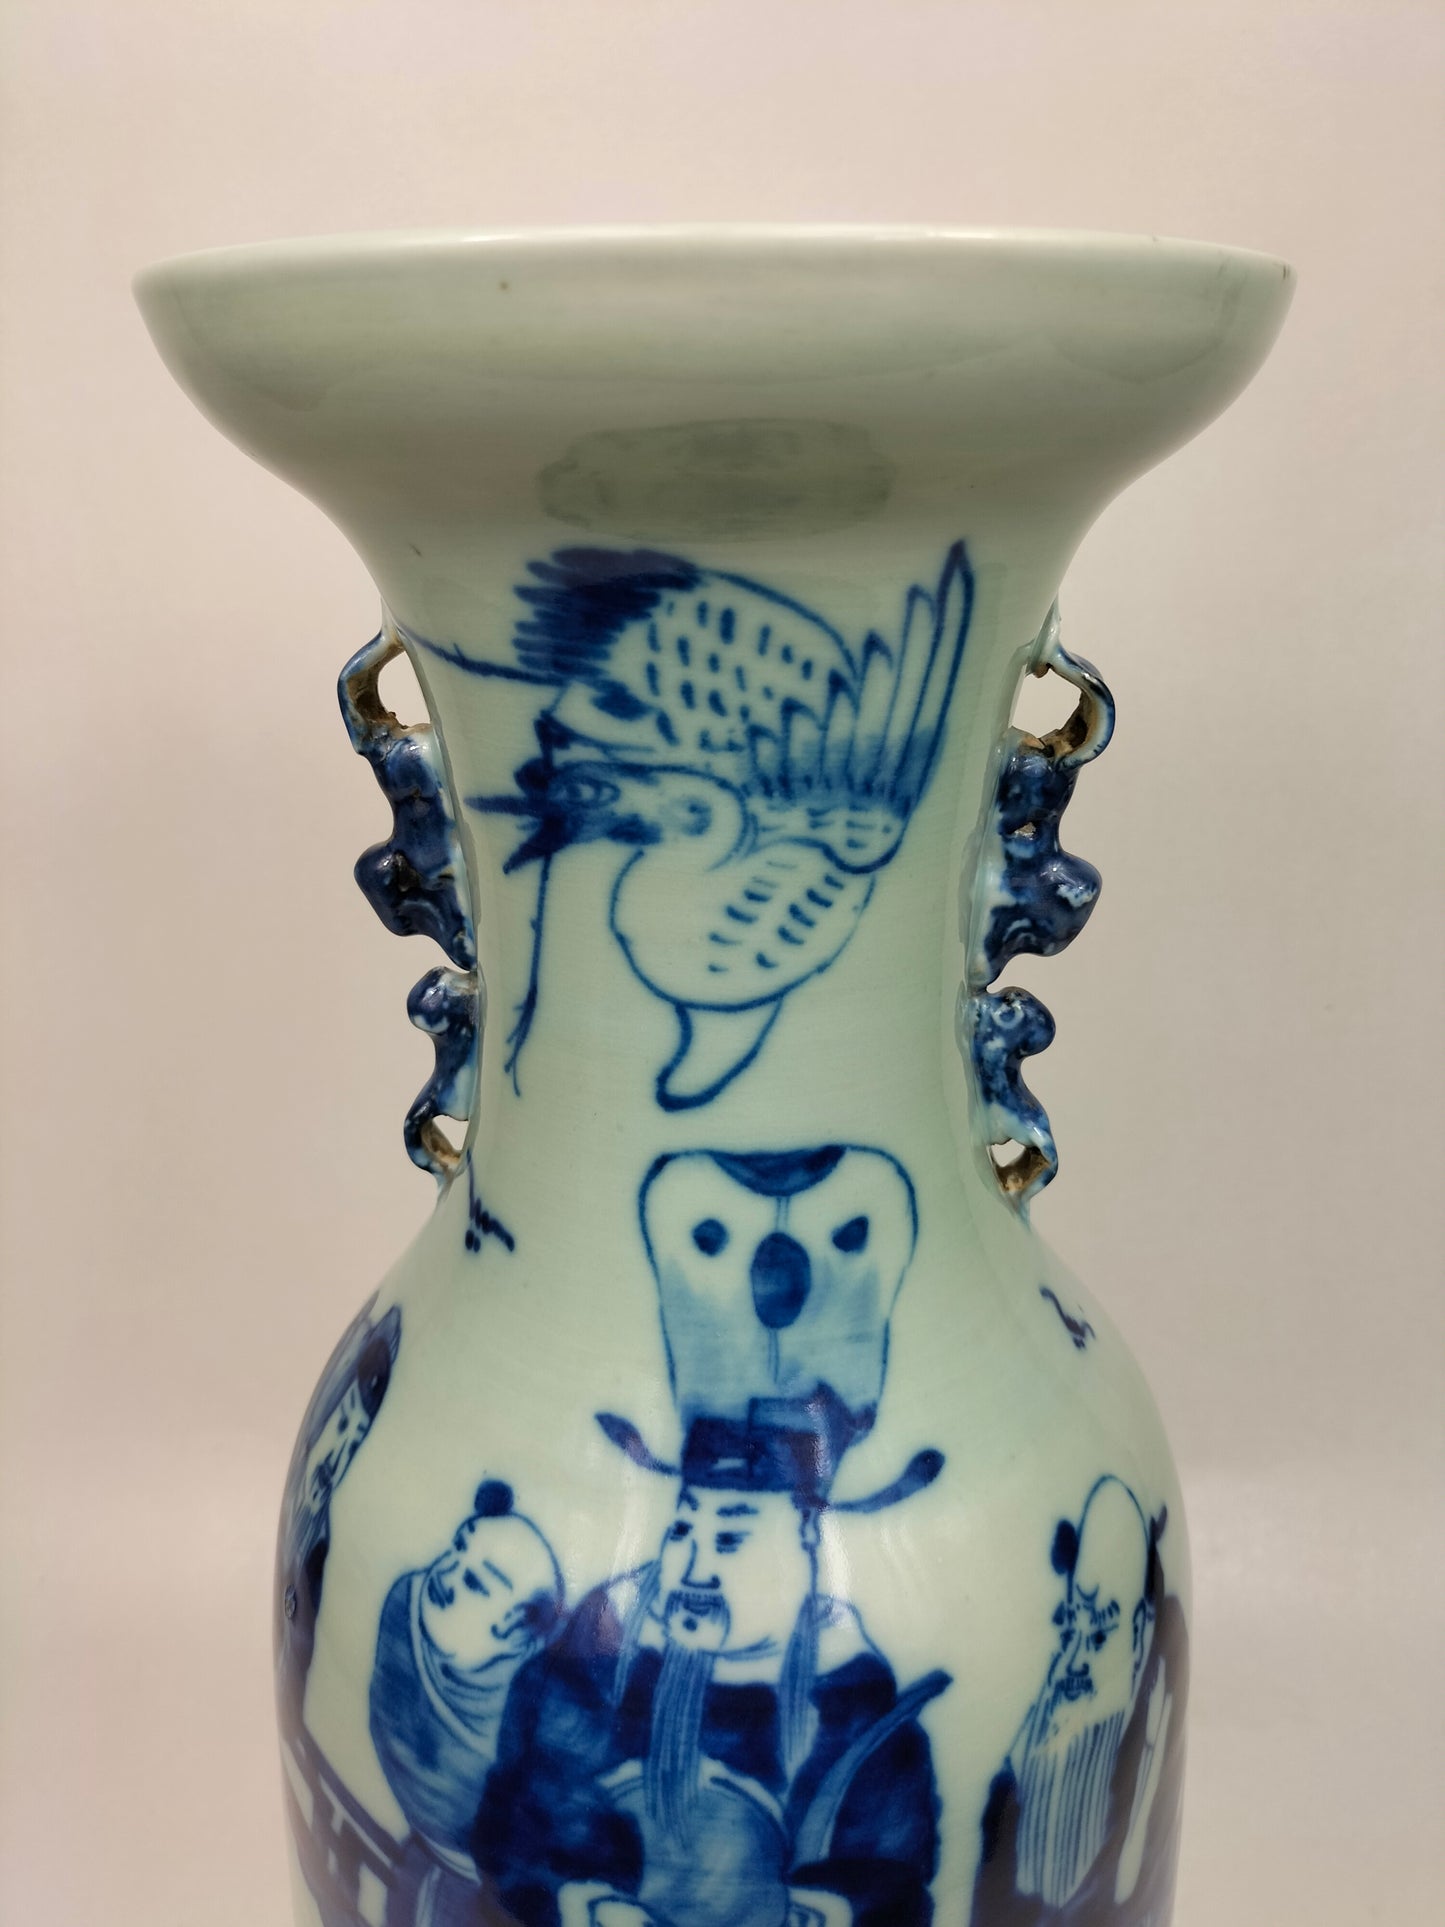 Grand vase antique chinois en céladon à décor de sages // Dynastie Qing - 19ème siècle